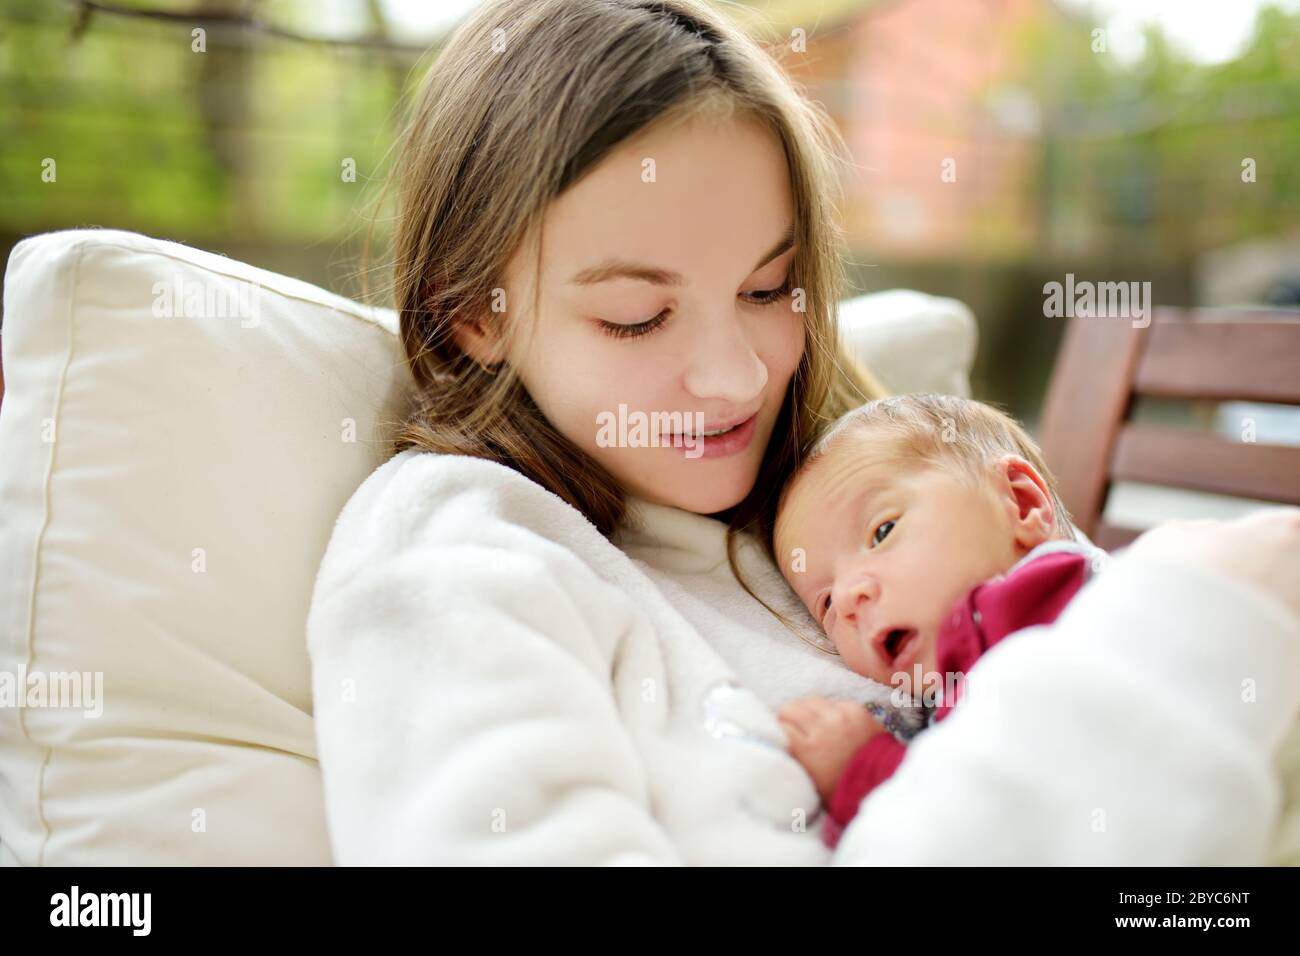 Jolie grande sœur admirant son frère nouveau-né. Adorable jeune fille qui tient son nouveau frère de garçon. Enfants avec un grand écart d'âge. Grande différence d'âge entre les deux Banque D'Images